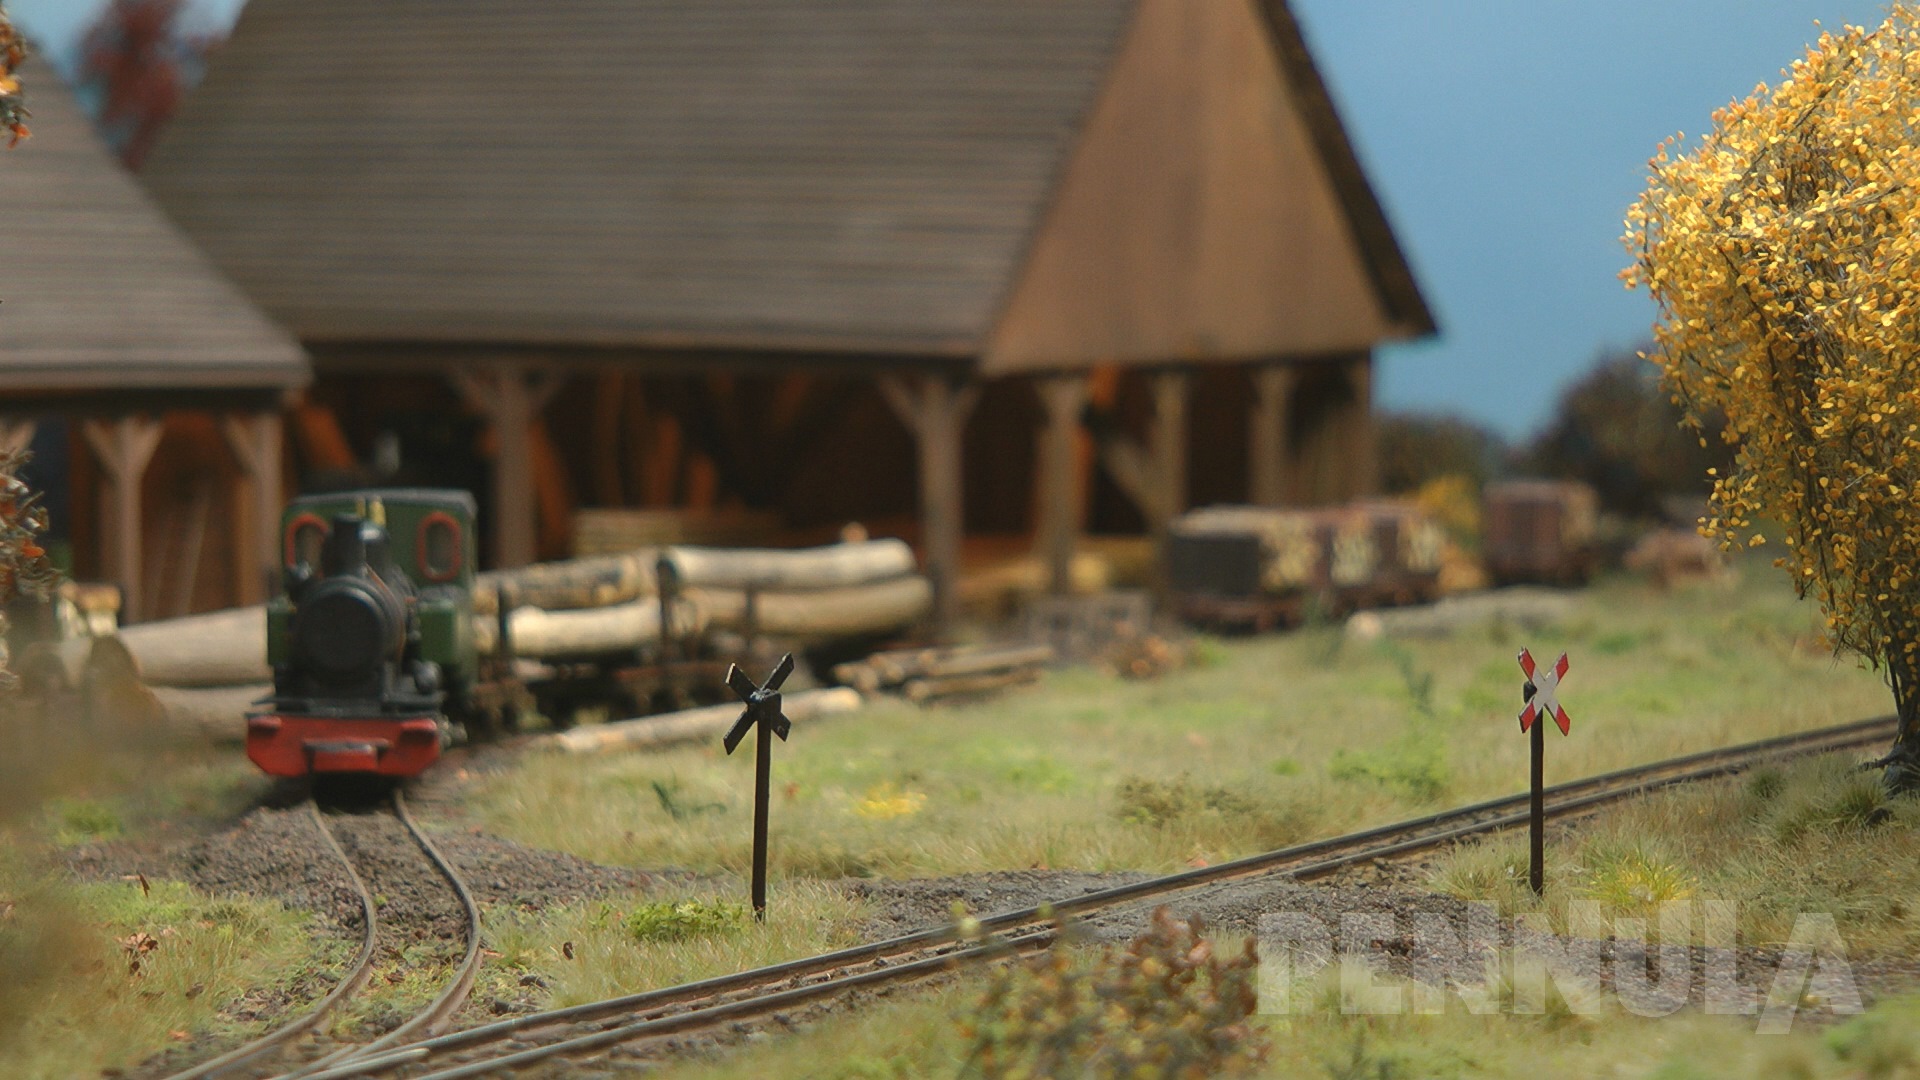 Eisenbahn im Wald mit Sägewerk - H0 Schmalspur Modellbahn Diorama aus Belgien